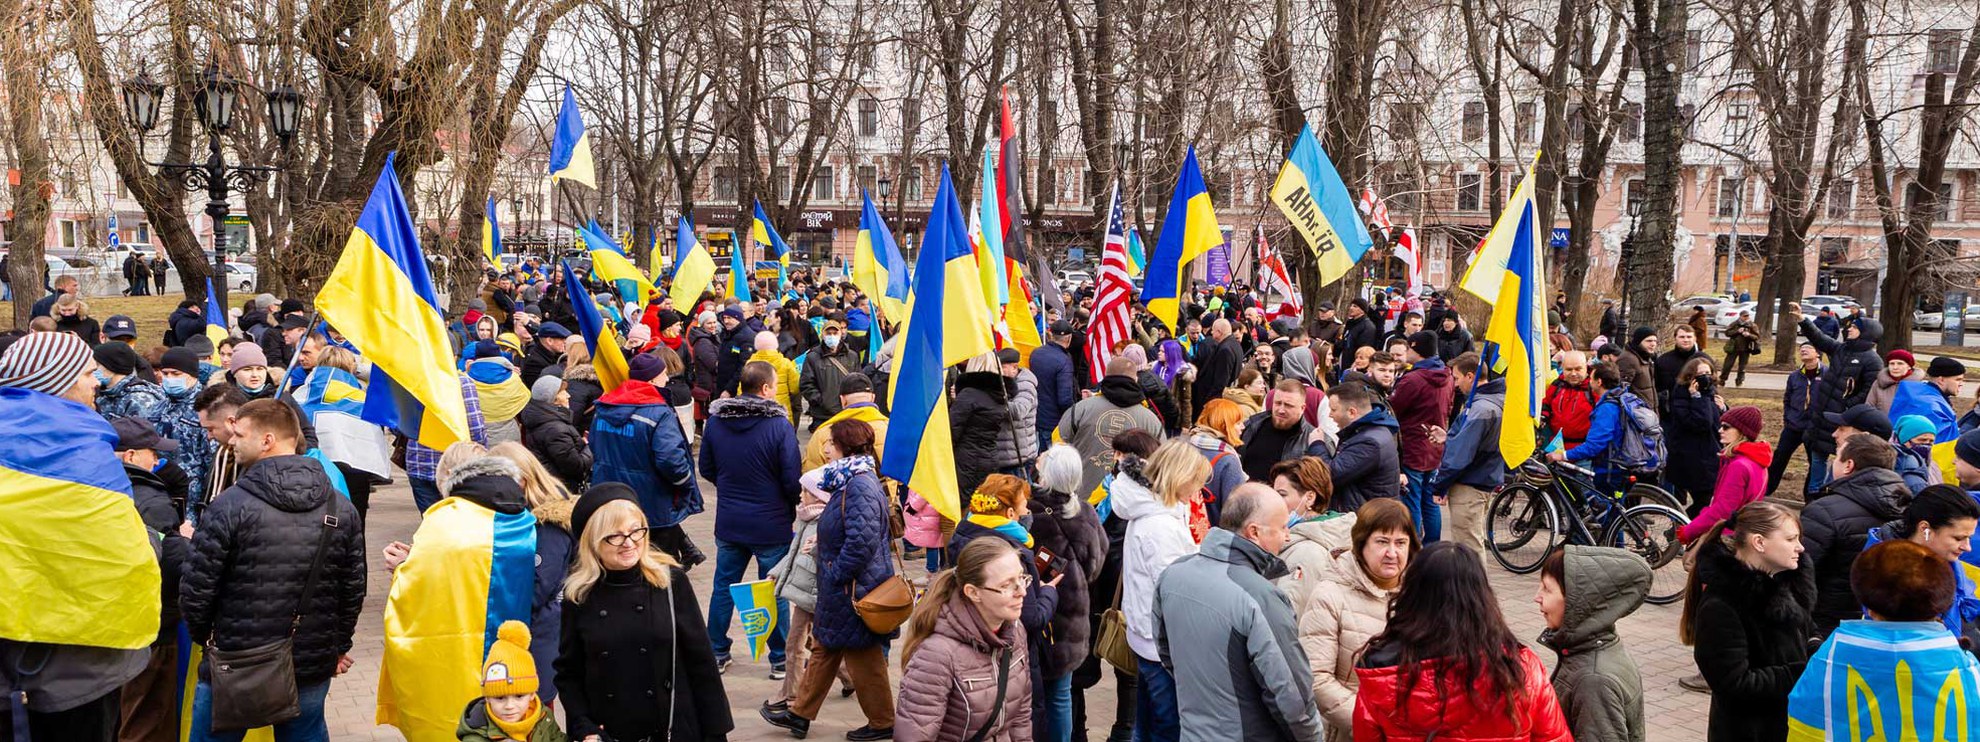 Odessa, 20 febbraio 2022: una manifestazione contro l'invasione russa, in quel momento solo una minaccia. © Olga Soloviova | Dreamstime.com